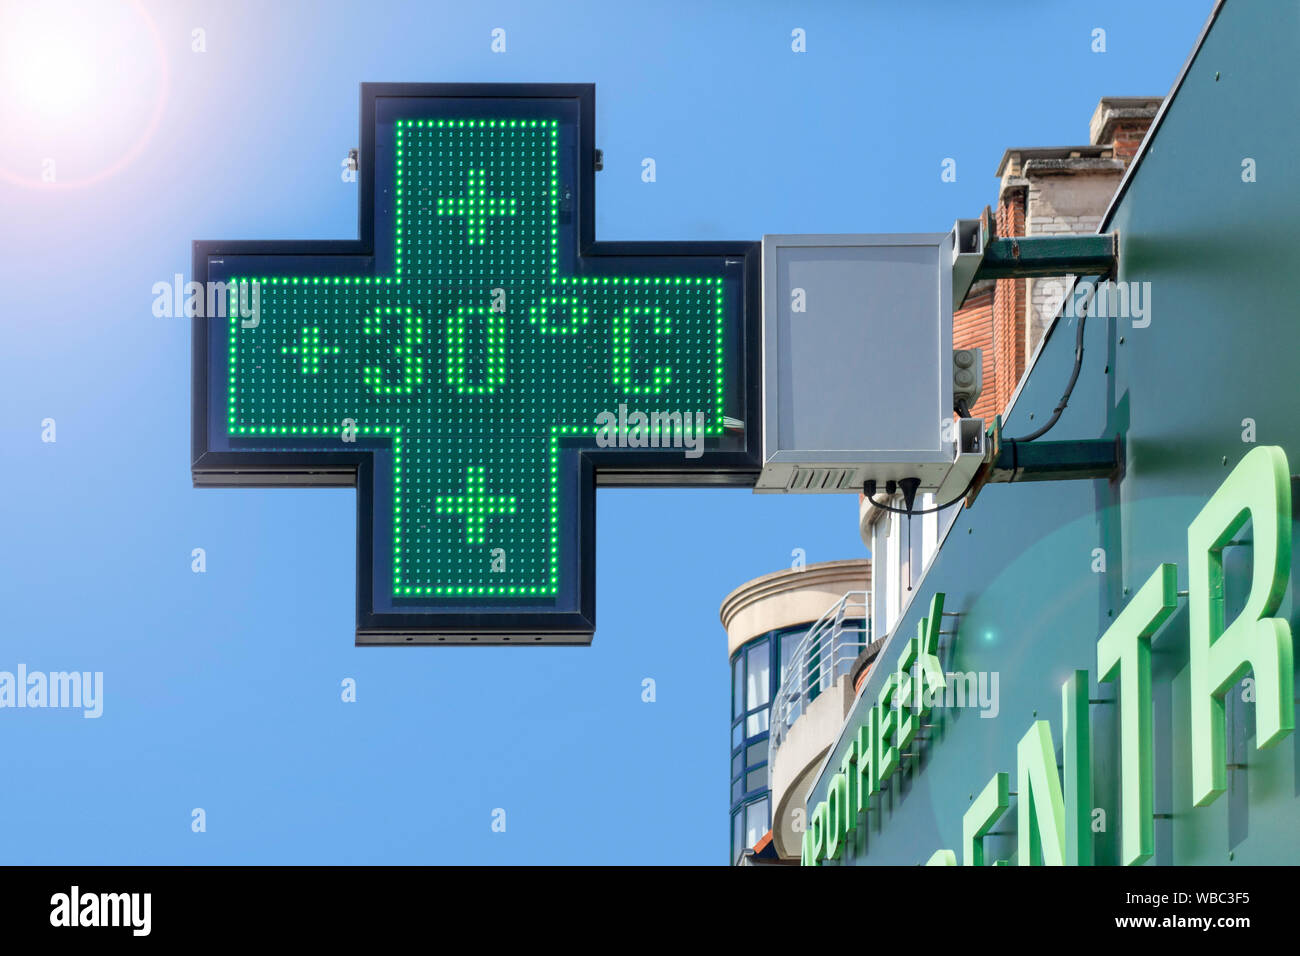 Thermomètre dans l'écran vert de la pharmacie affiche une température extrêmement chaude de 30 degrés Celsius / 30°C / 30°C pendant la vague de chaleur d'été / vague de chaleur Banque D'Images